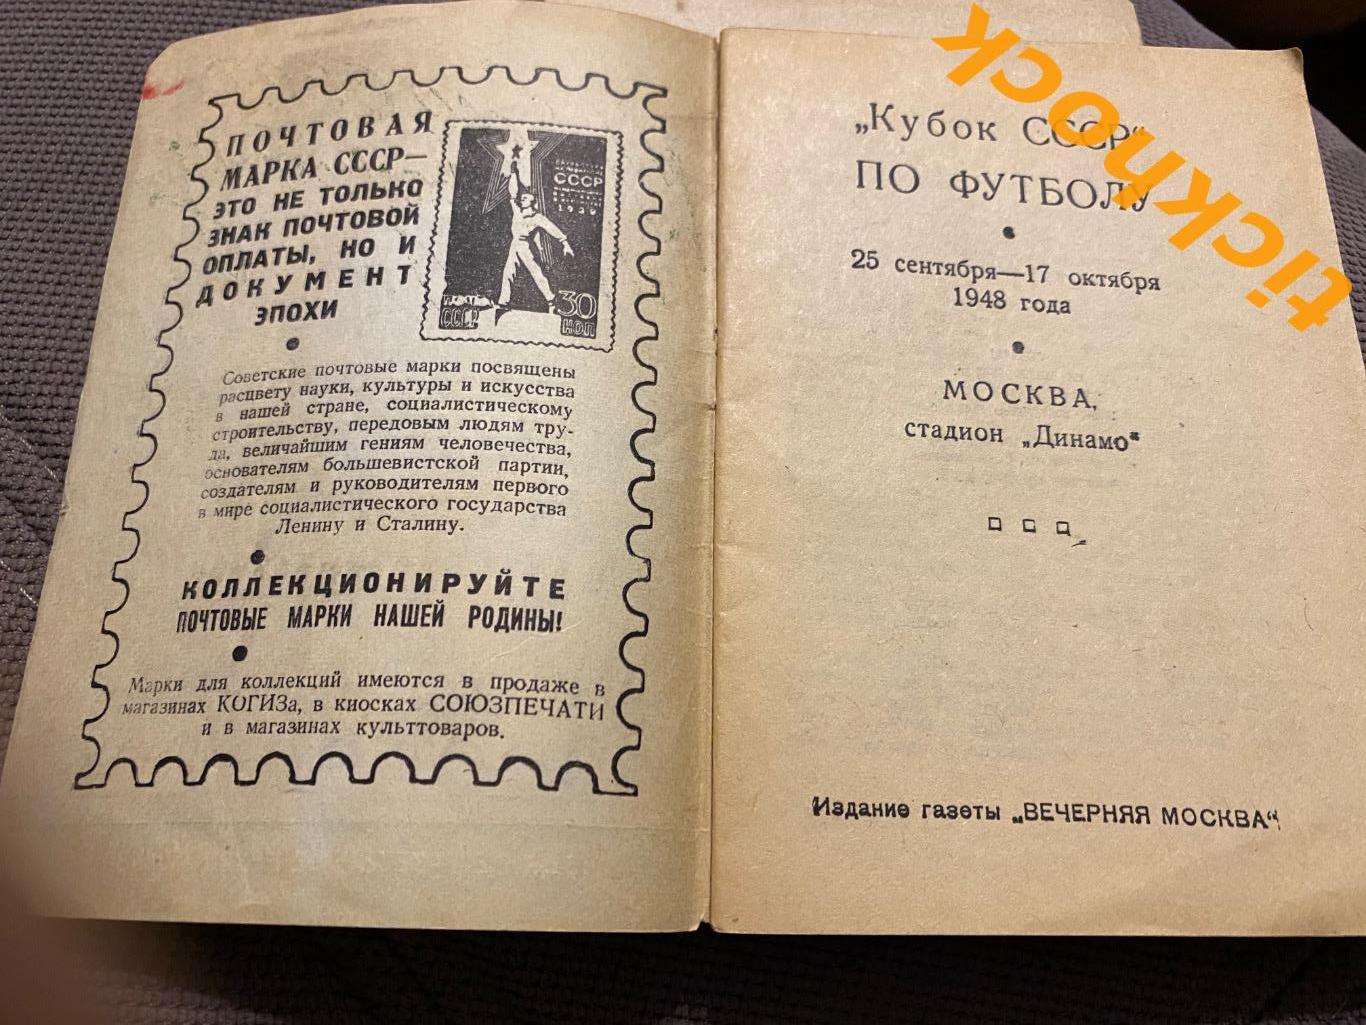 1948 - календарь- справочник Вечерняя Москва КУбок СССР - SY 1